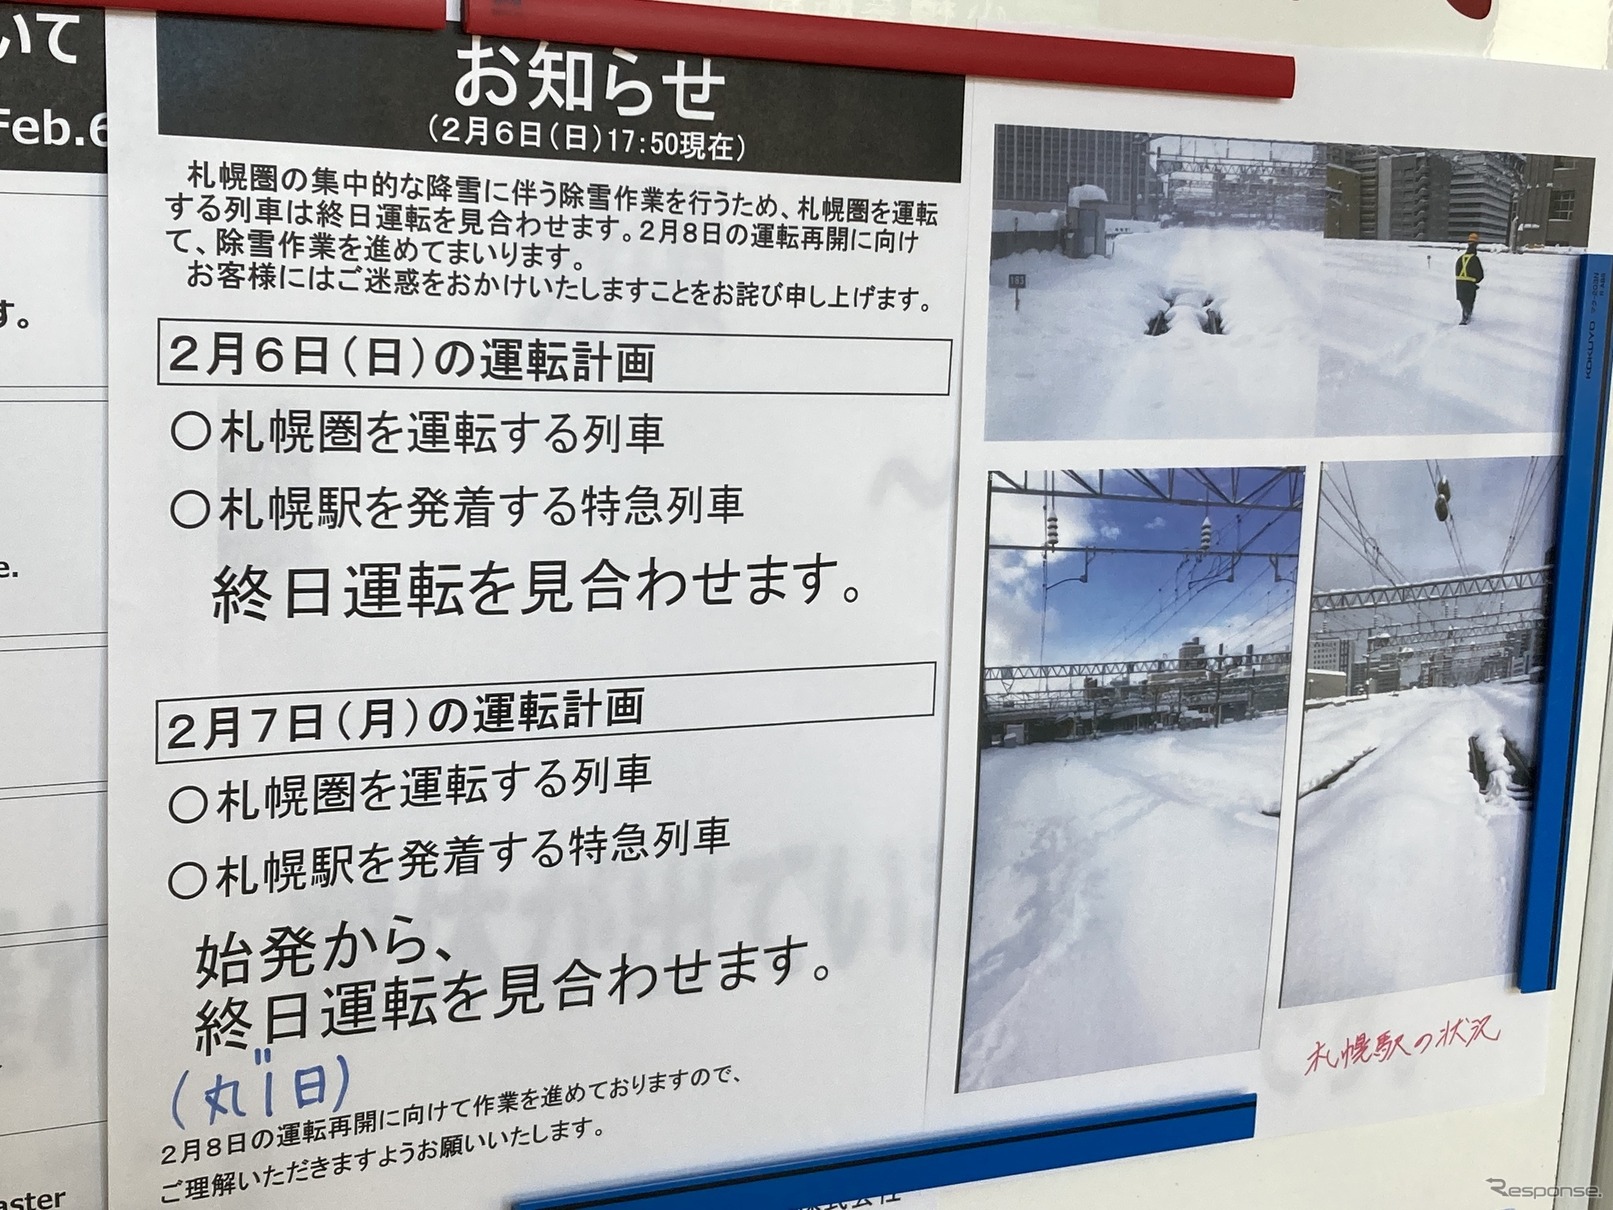 札幌駅の状況を伝える小樽駅の掲示。